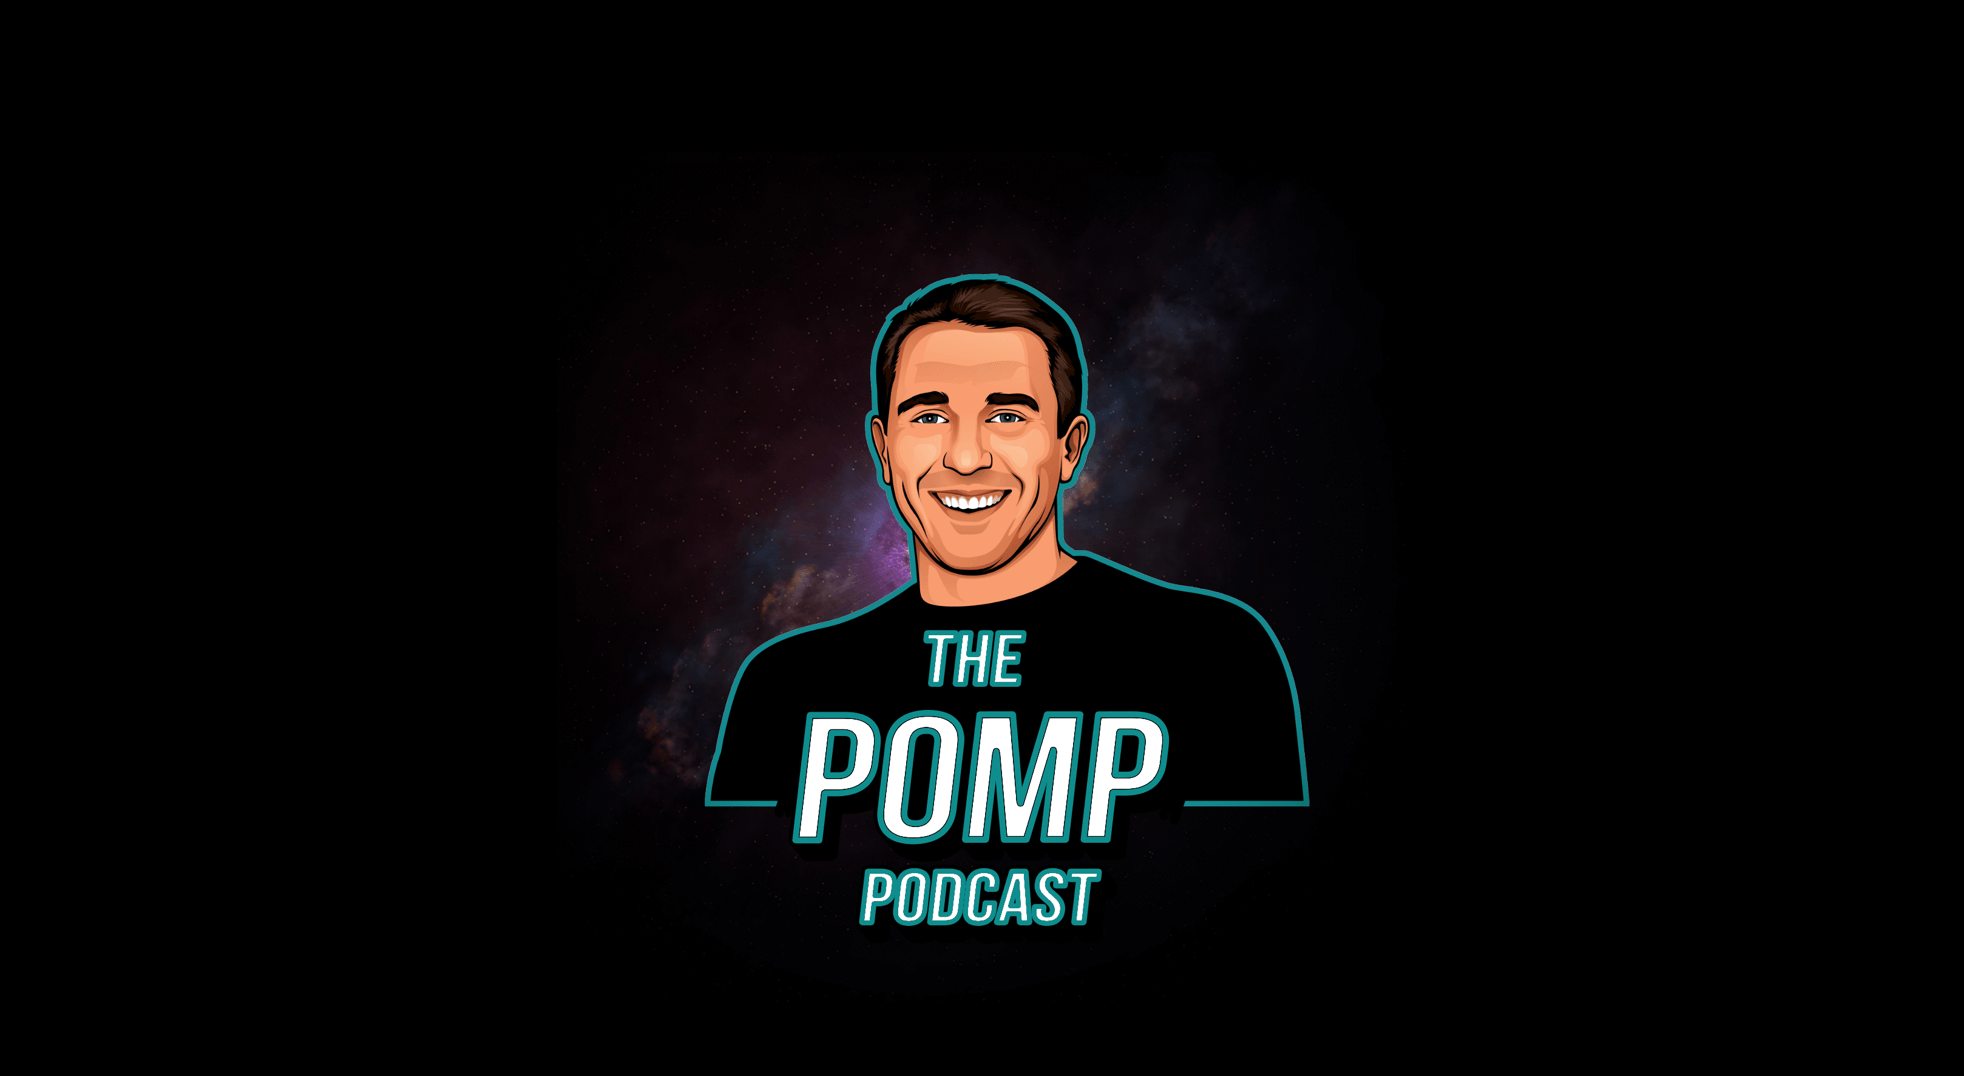 Pomp Podcast